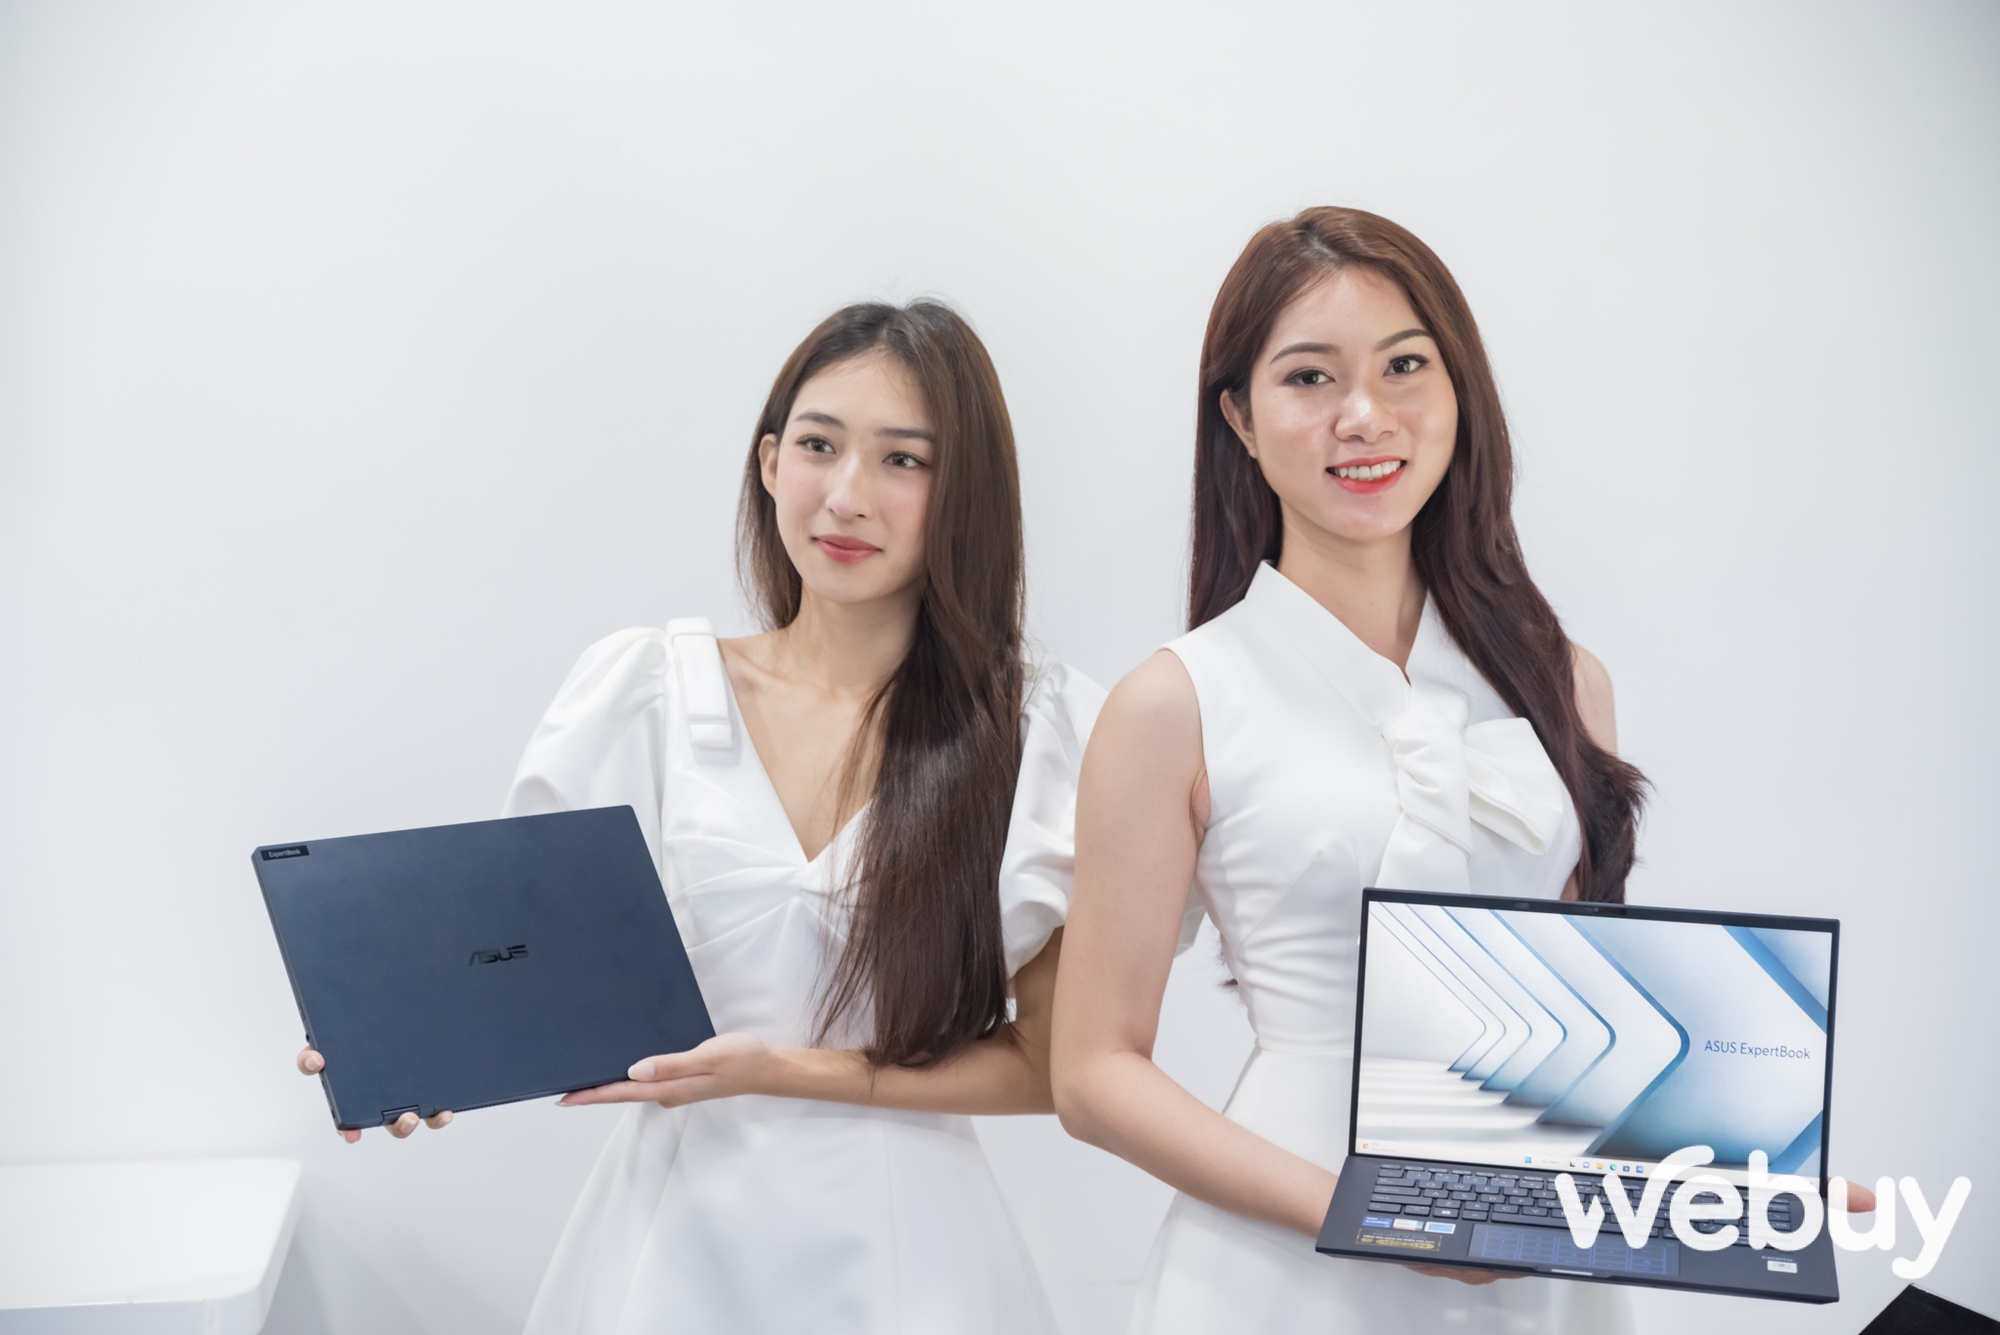 ASUS giới thiệu loạt laptop ExpertBook thế hệ mới, đa dạng lựa chọn hướng đến đối tượng khách hàng doanh nghiệp - Ảnh 1.